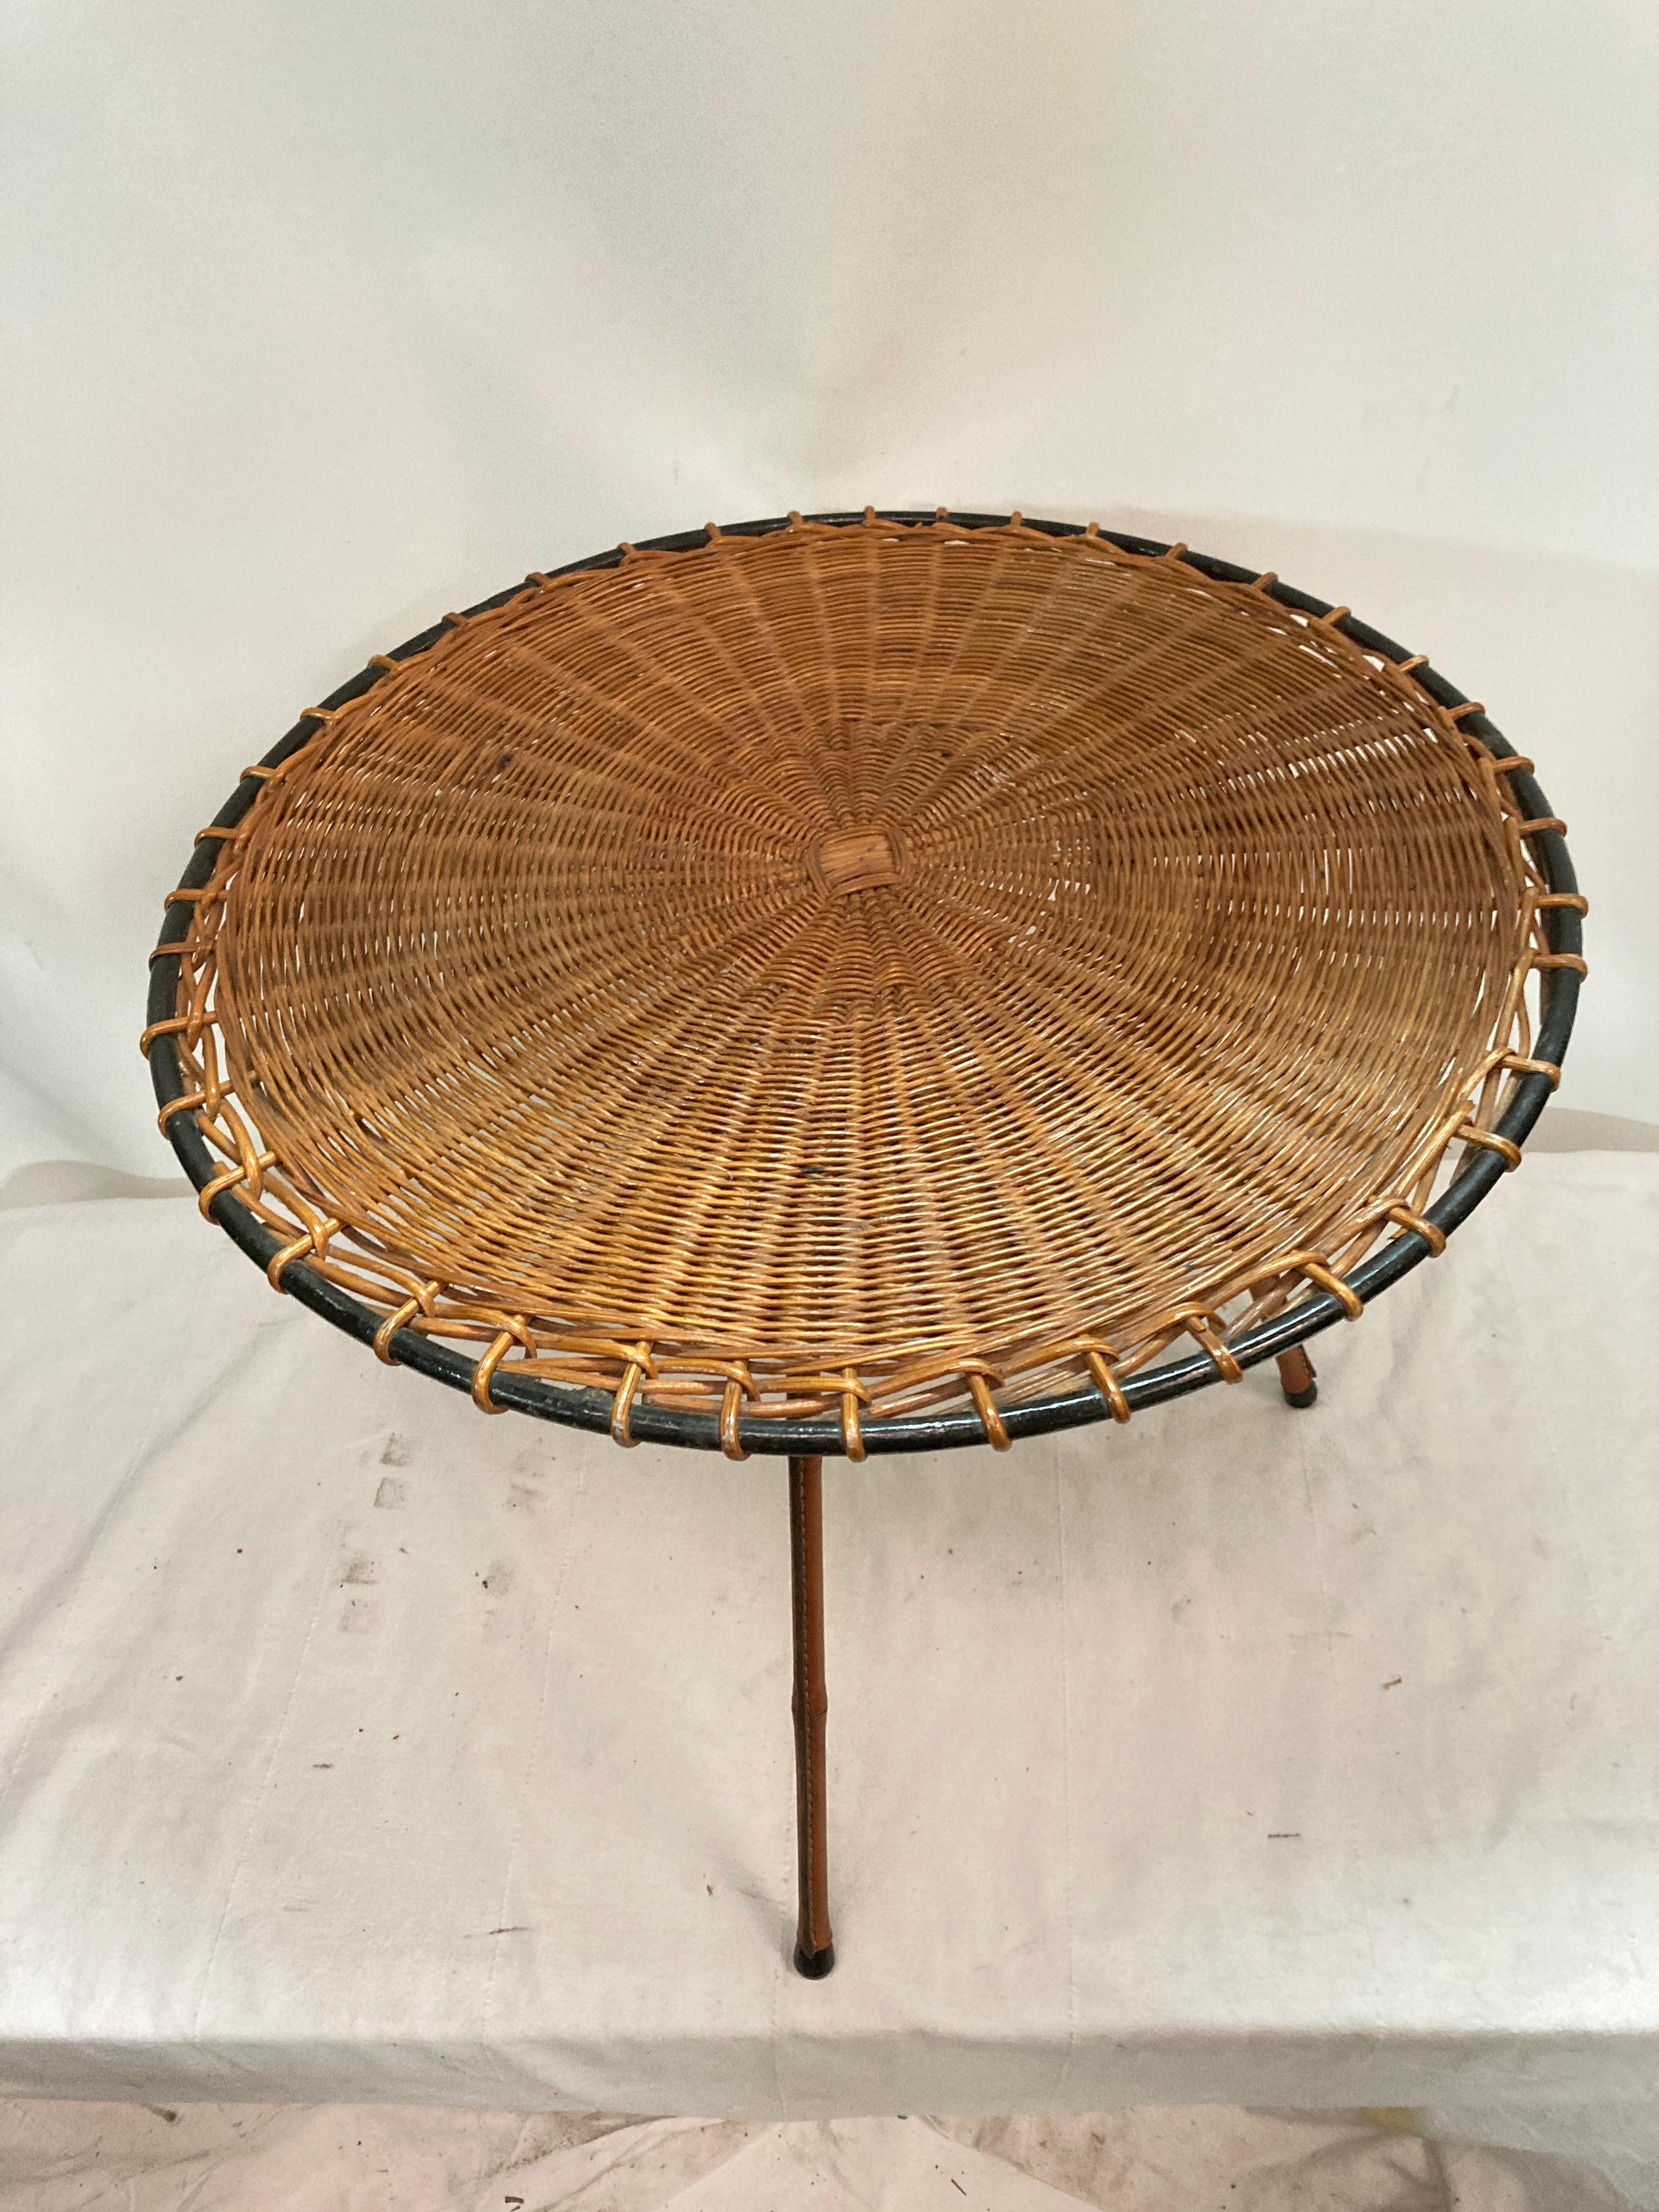 Sehr schöner Beistelltisch oder Beistelltisch mit Rattanplatte und genähten Lederbeinen im Bambus-Stil
Frankreich
1950's